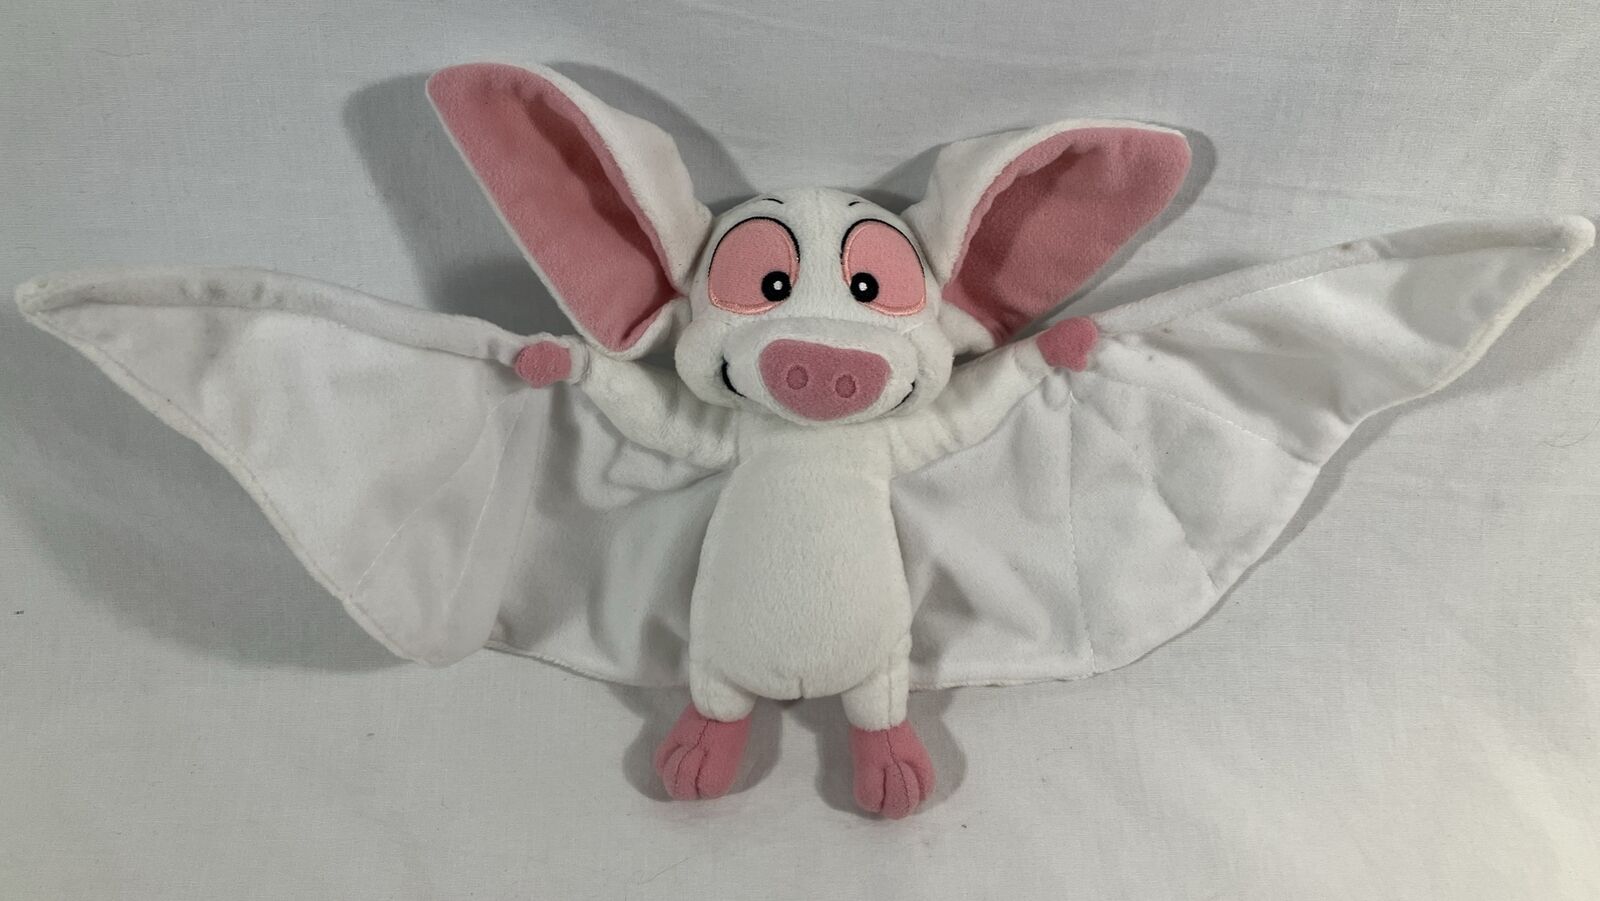 Vintage Anantasia Bartok the Magnificent White Bat Plush Stuffed Animal Toy Fox